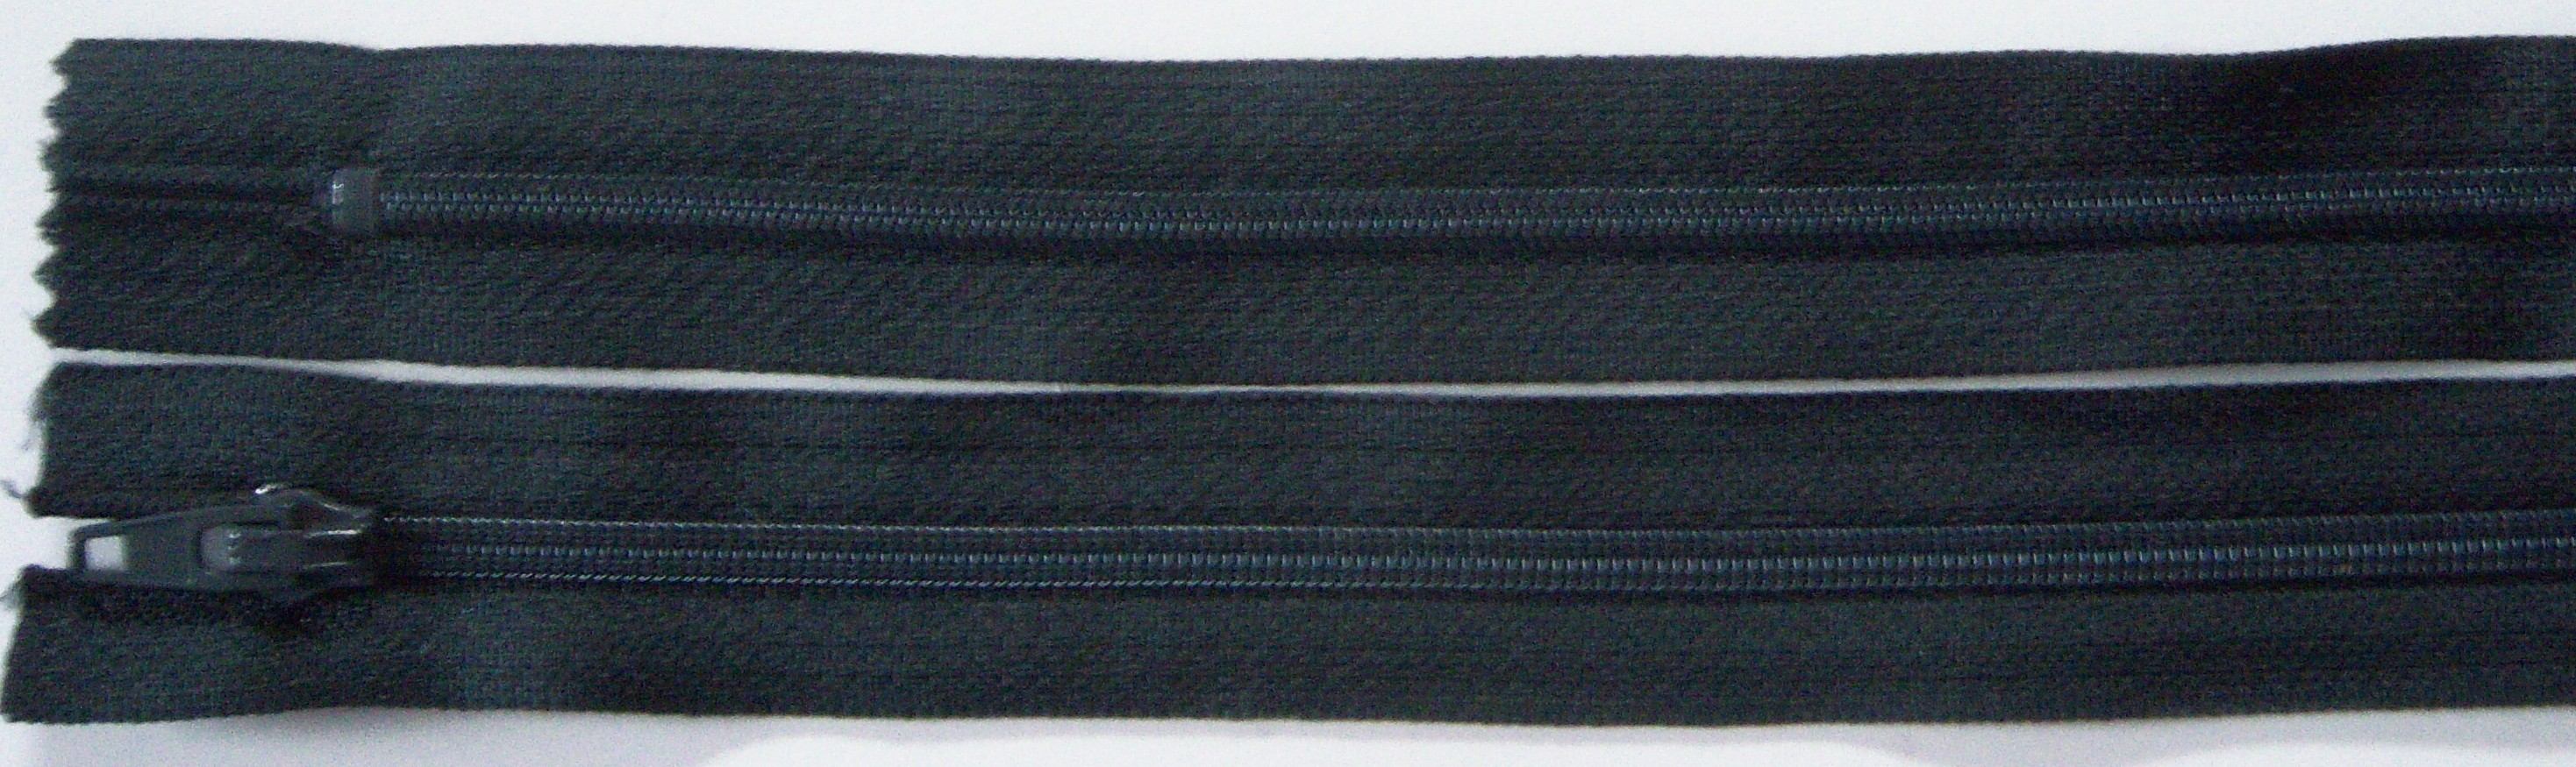 Graphite YKK 6.5" Nylon Coil Zipper